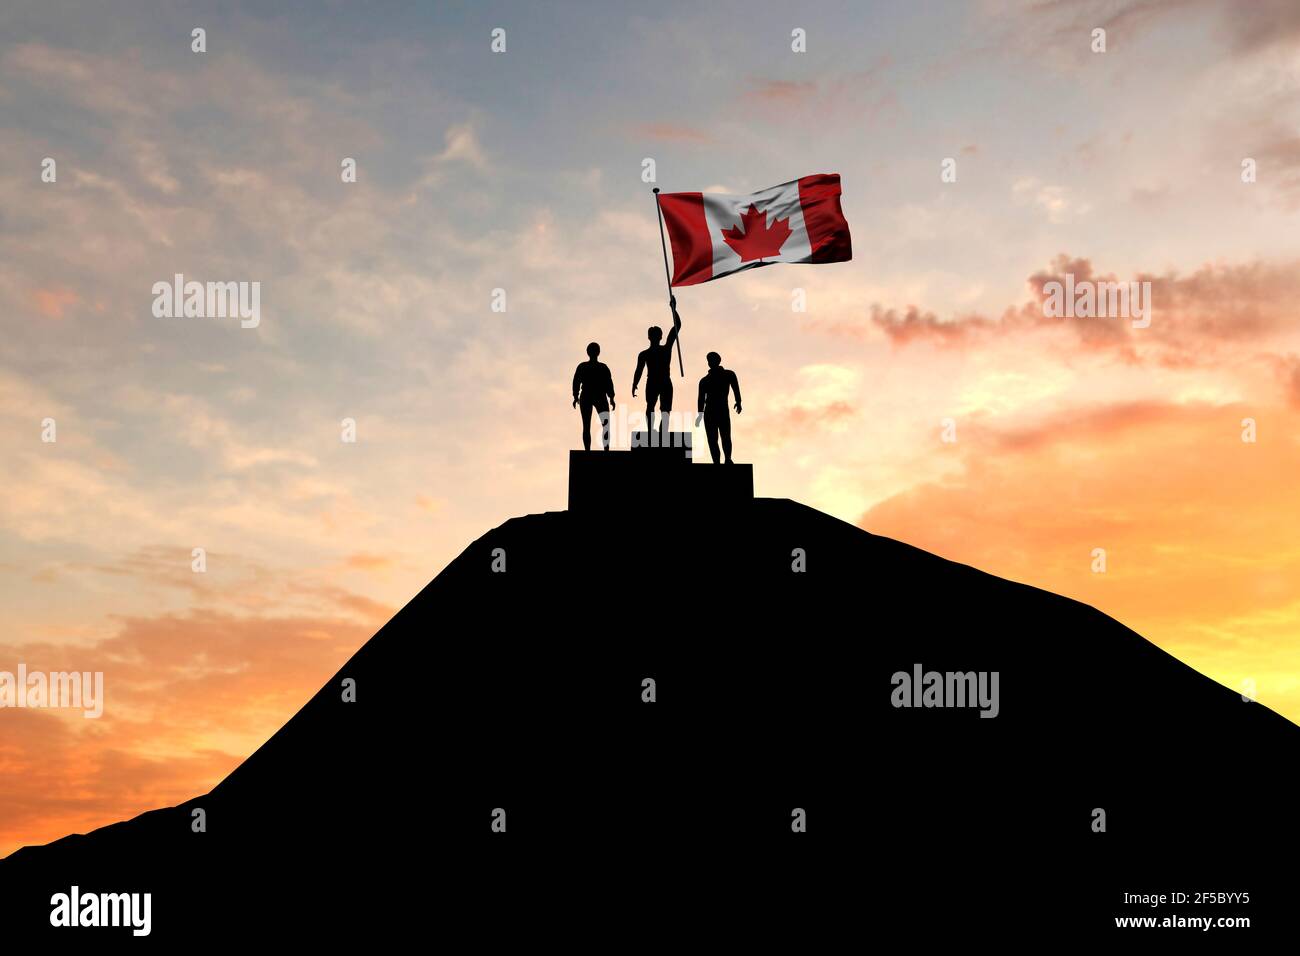 La bandiera canadese è stata sventolata in cima al podio dei vincitori. Rendering 3D Foto Stock